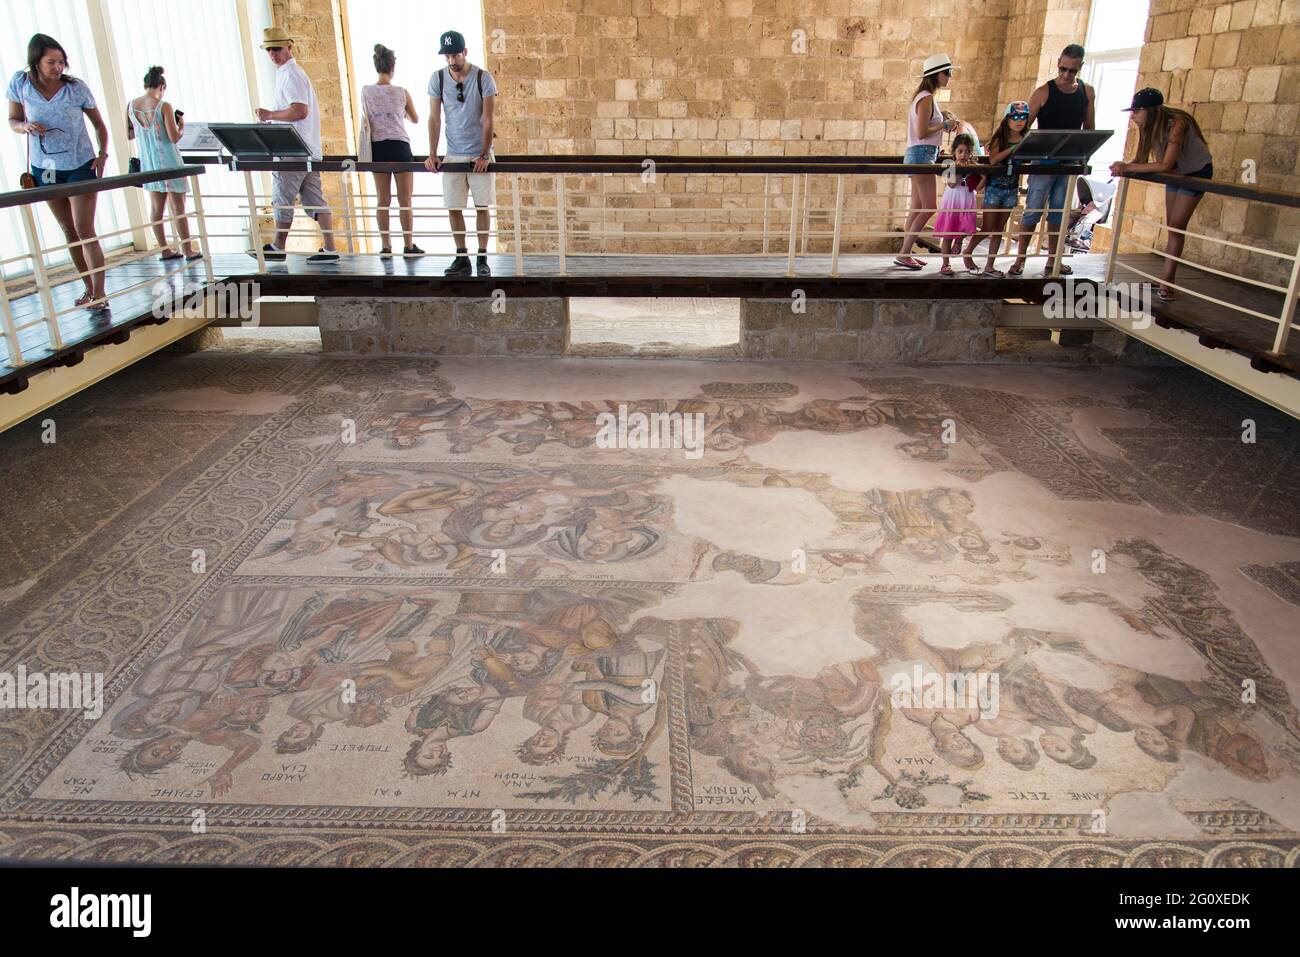 Besucher der Mosaike im Archäologischen Park von Paphos. - Apollo and Daphne on a Roman mosaic in Paphos Archeological Park. Stock Photo